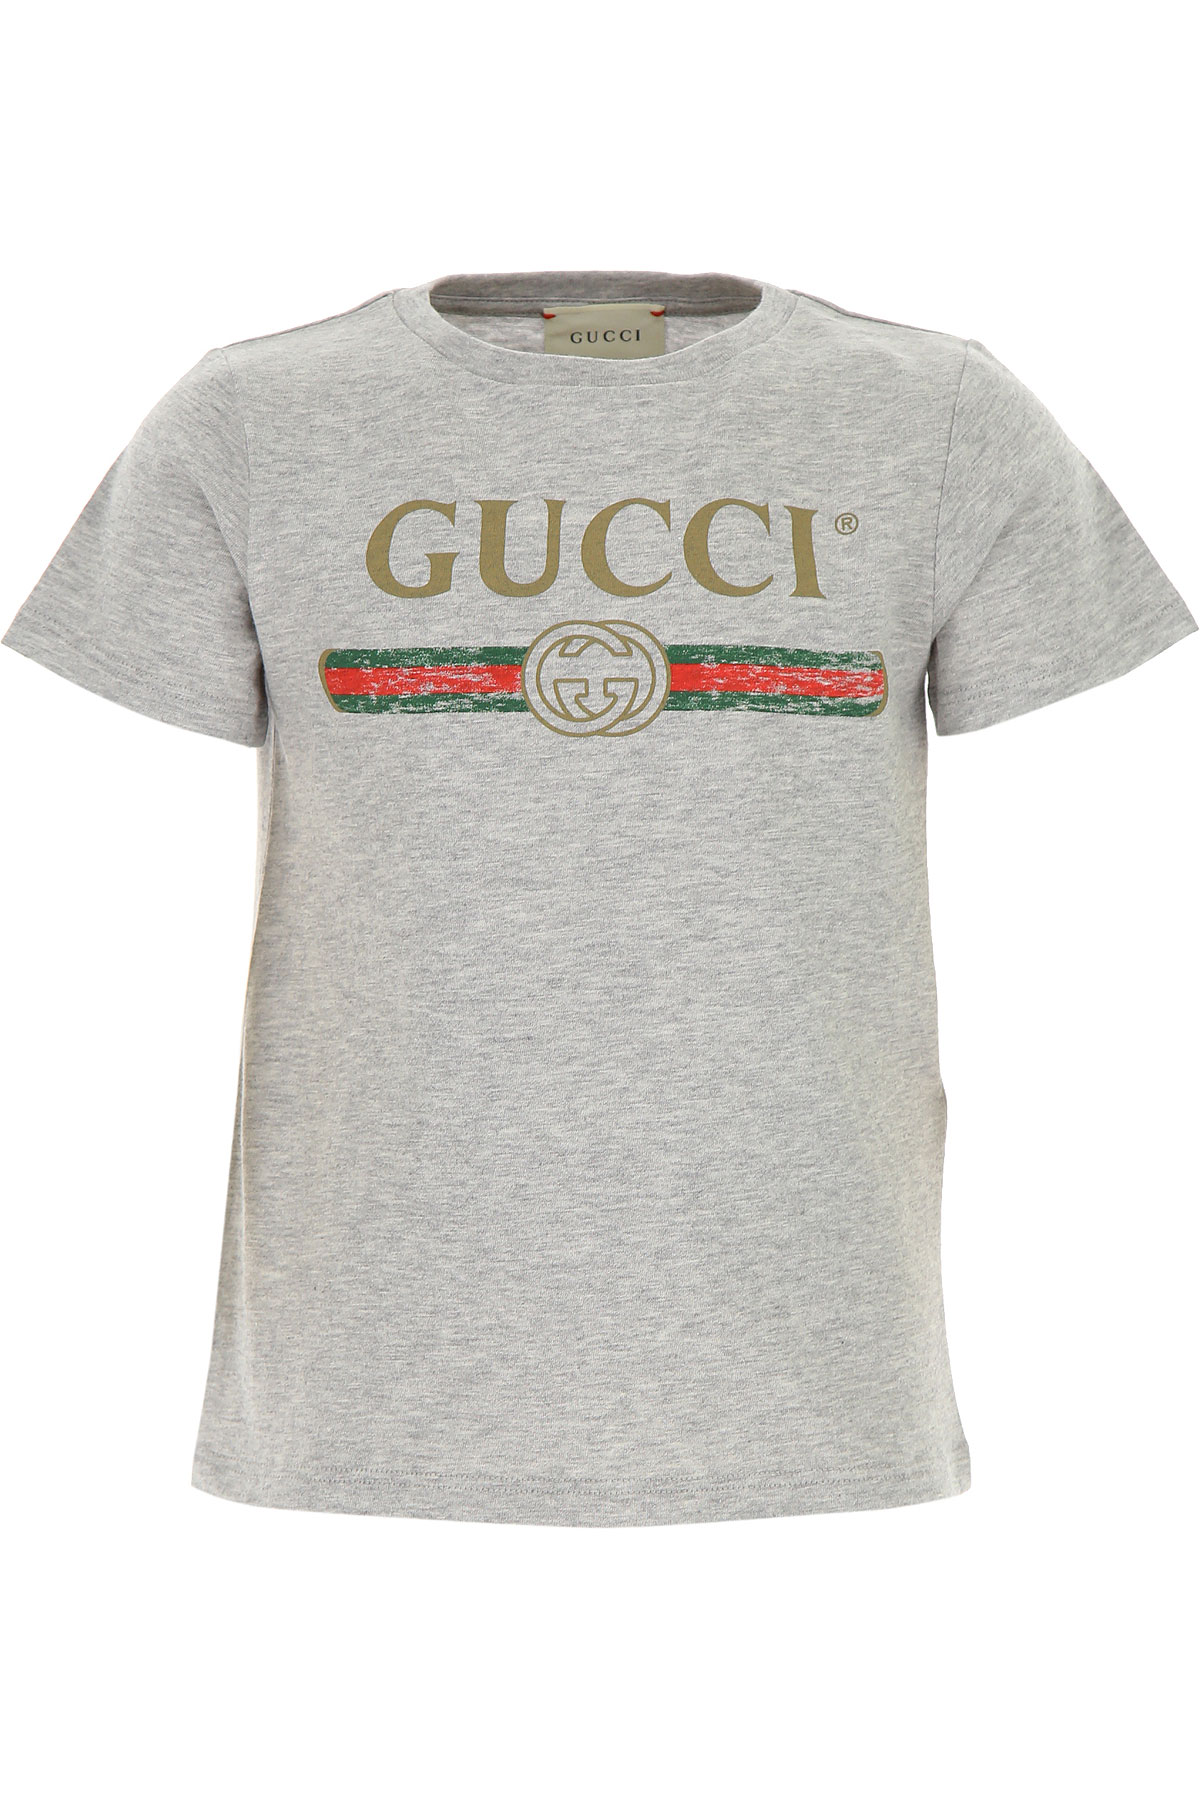 Gucci Kinder T-Shirt für Jungen Günstig im Sale, Grau, Baumwolle, 2017, 4Y 8Y